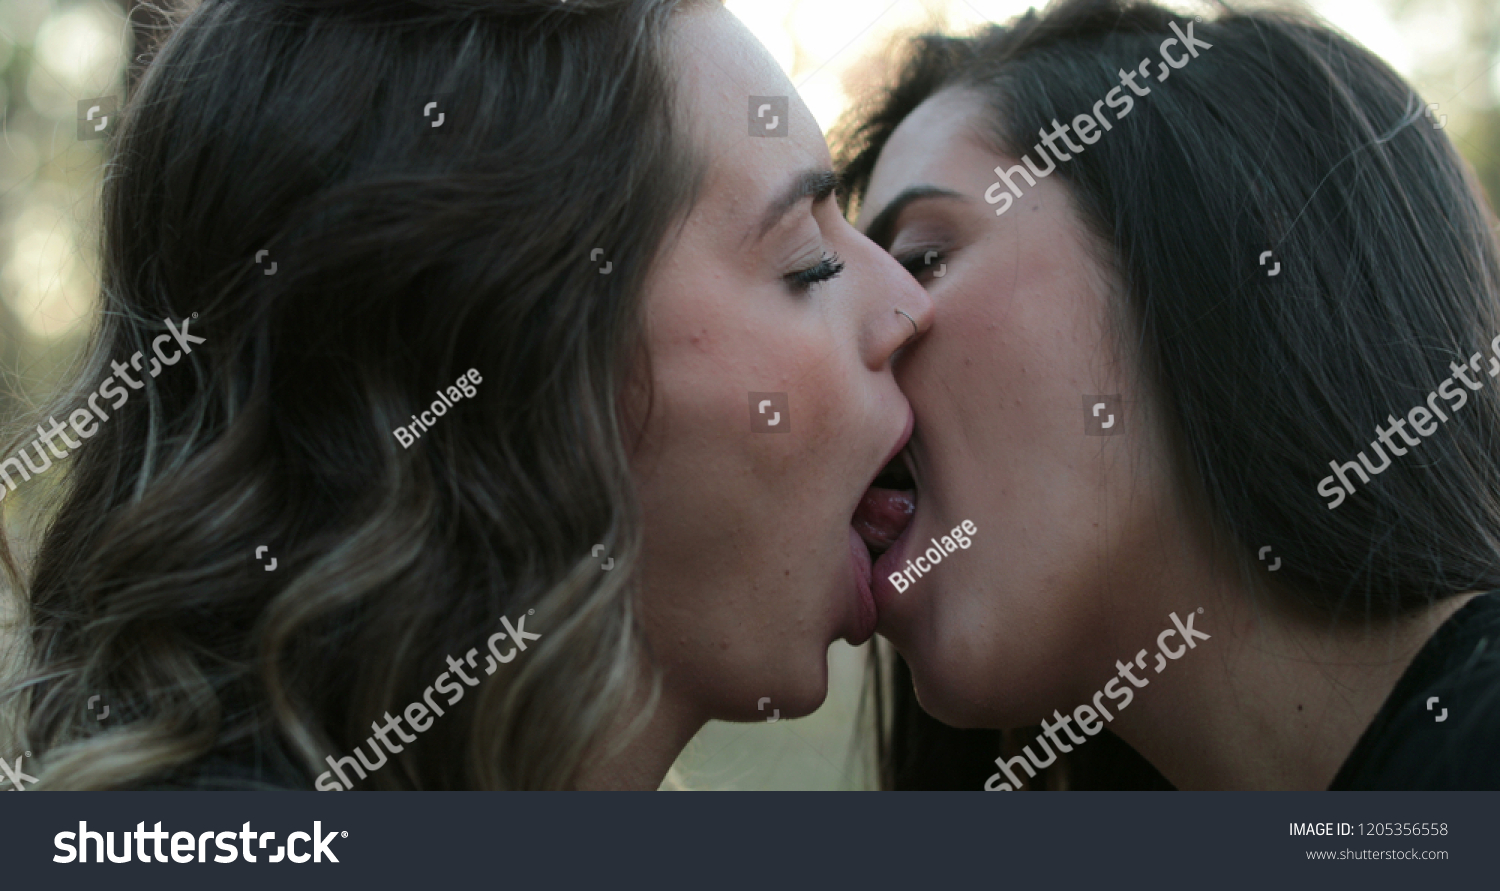 лесби целуются на людях фото 50